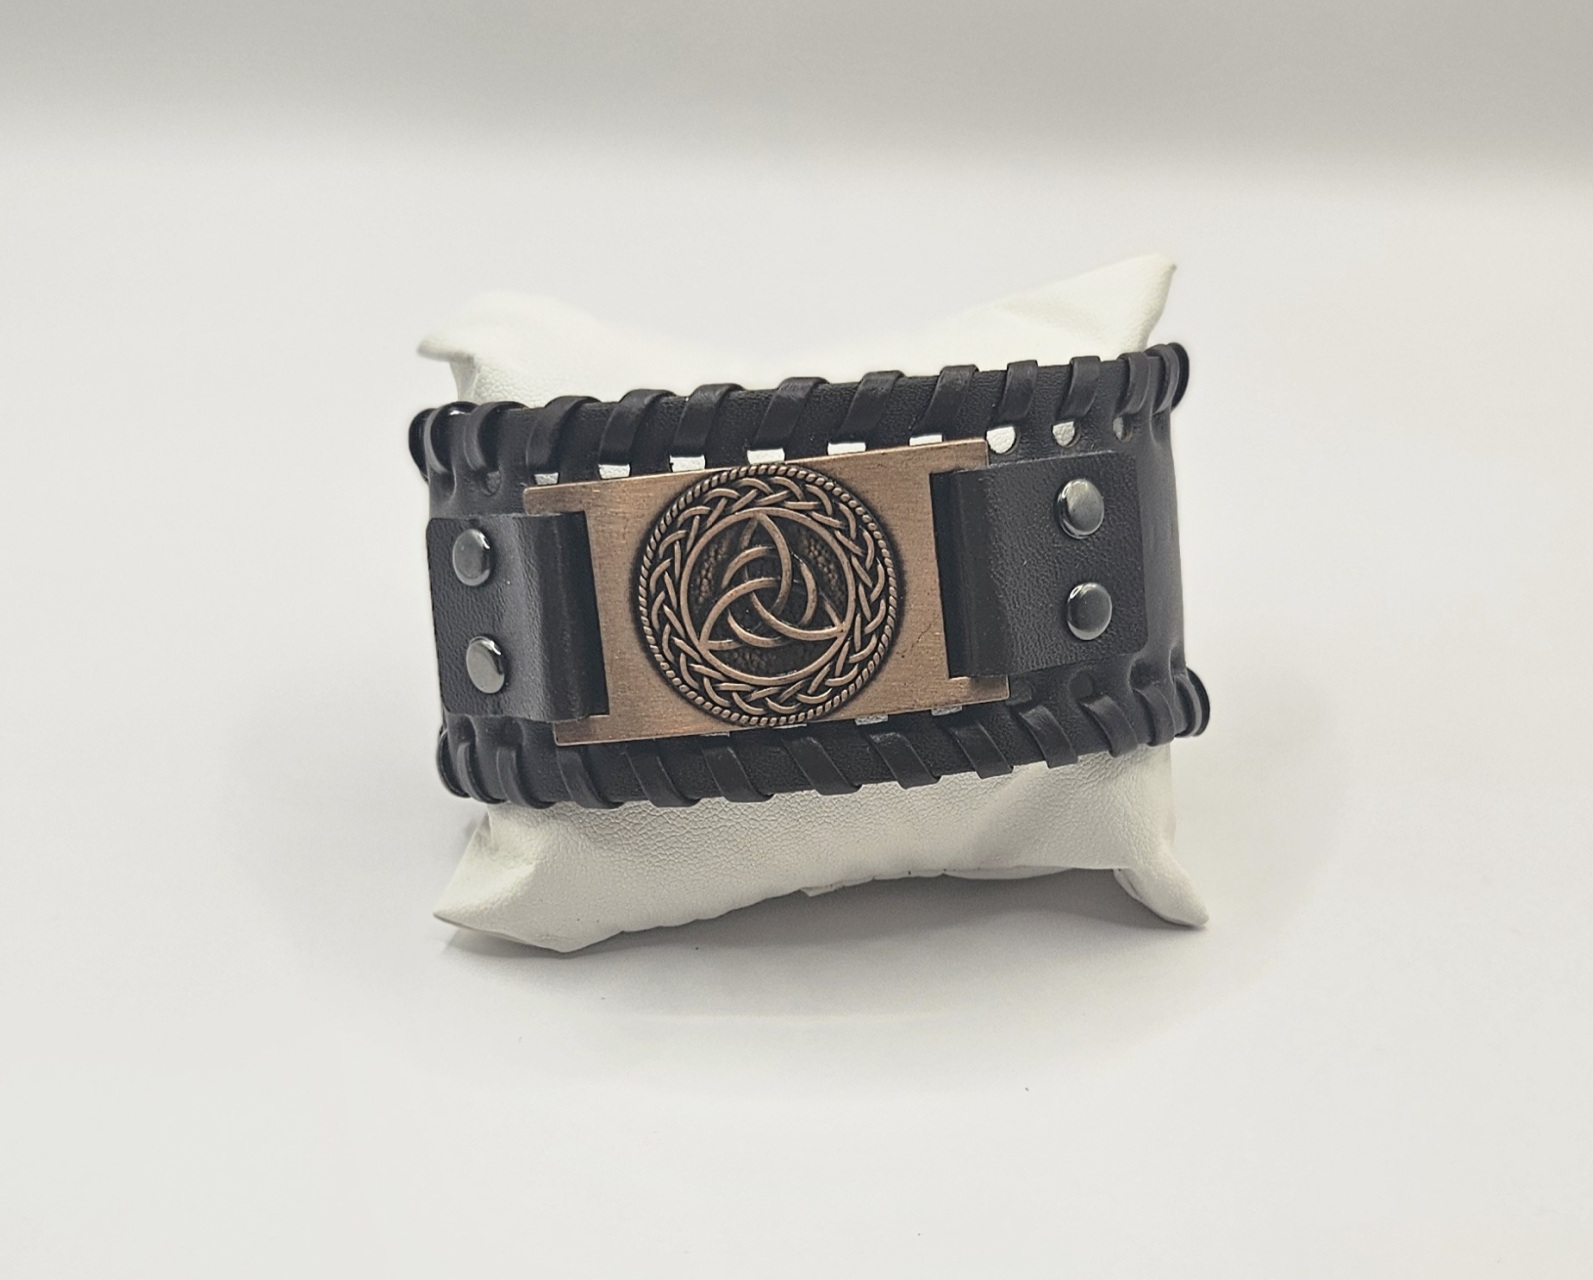 Brede Keltische armband met traditionele knooppatronen in zilver